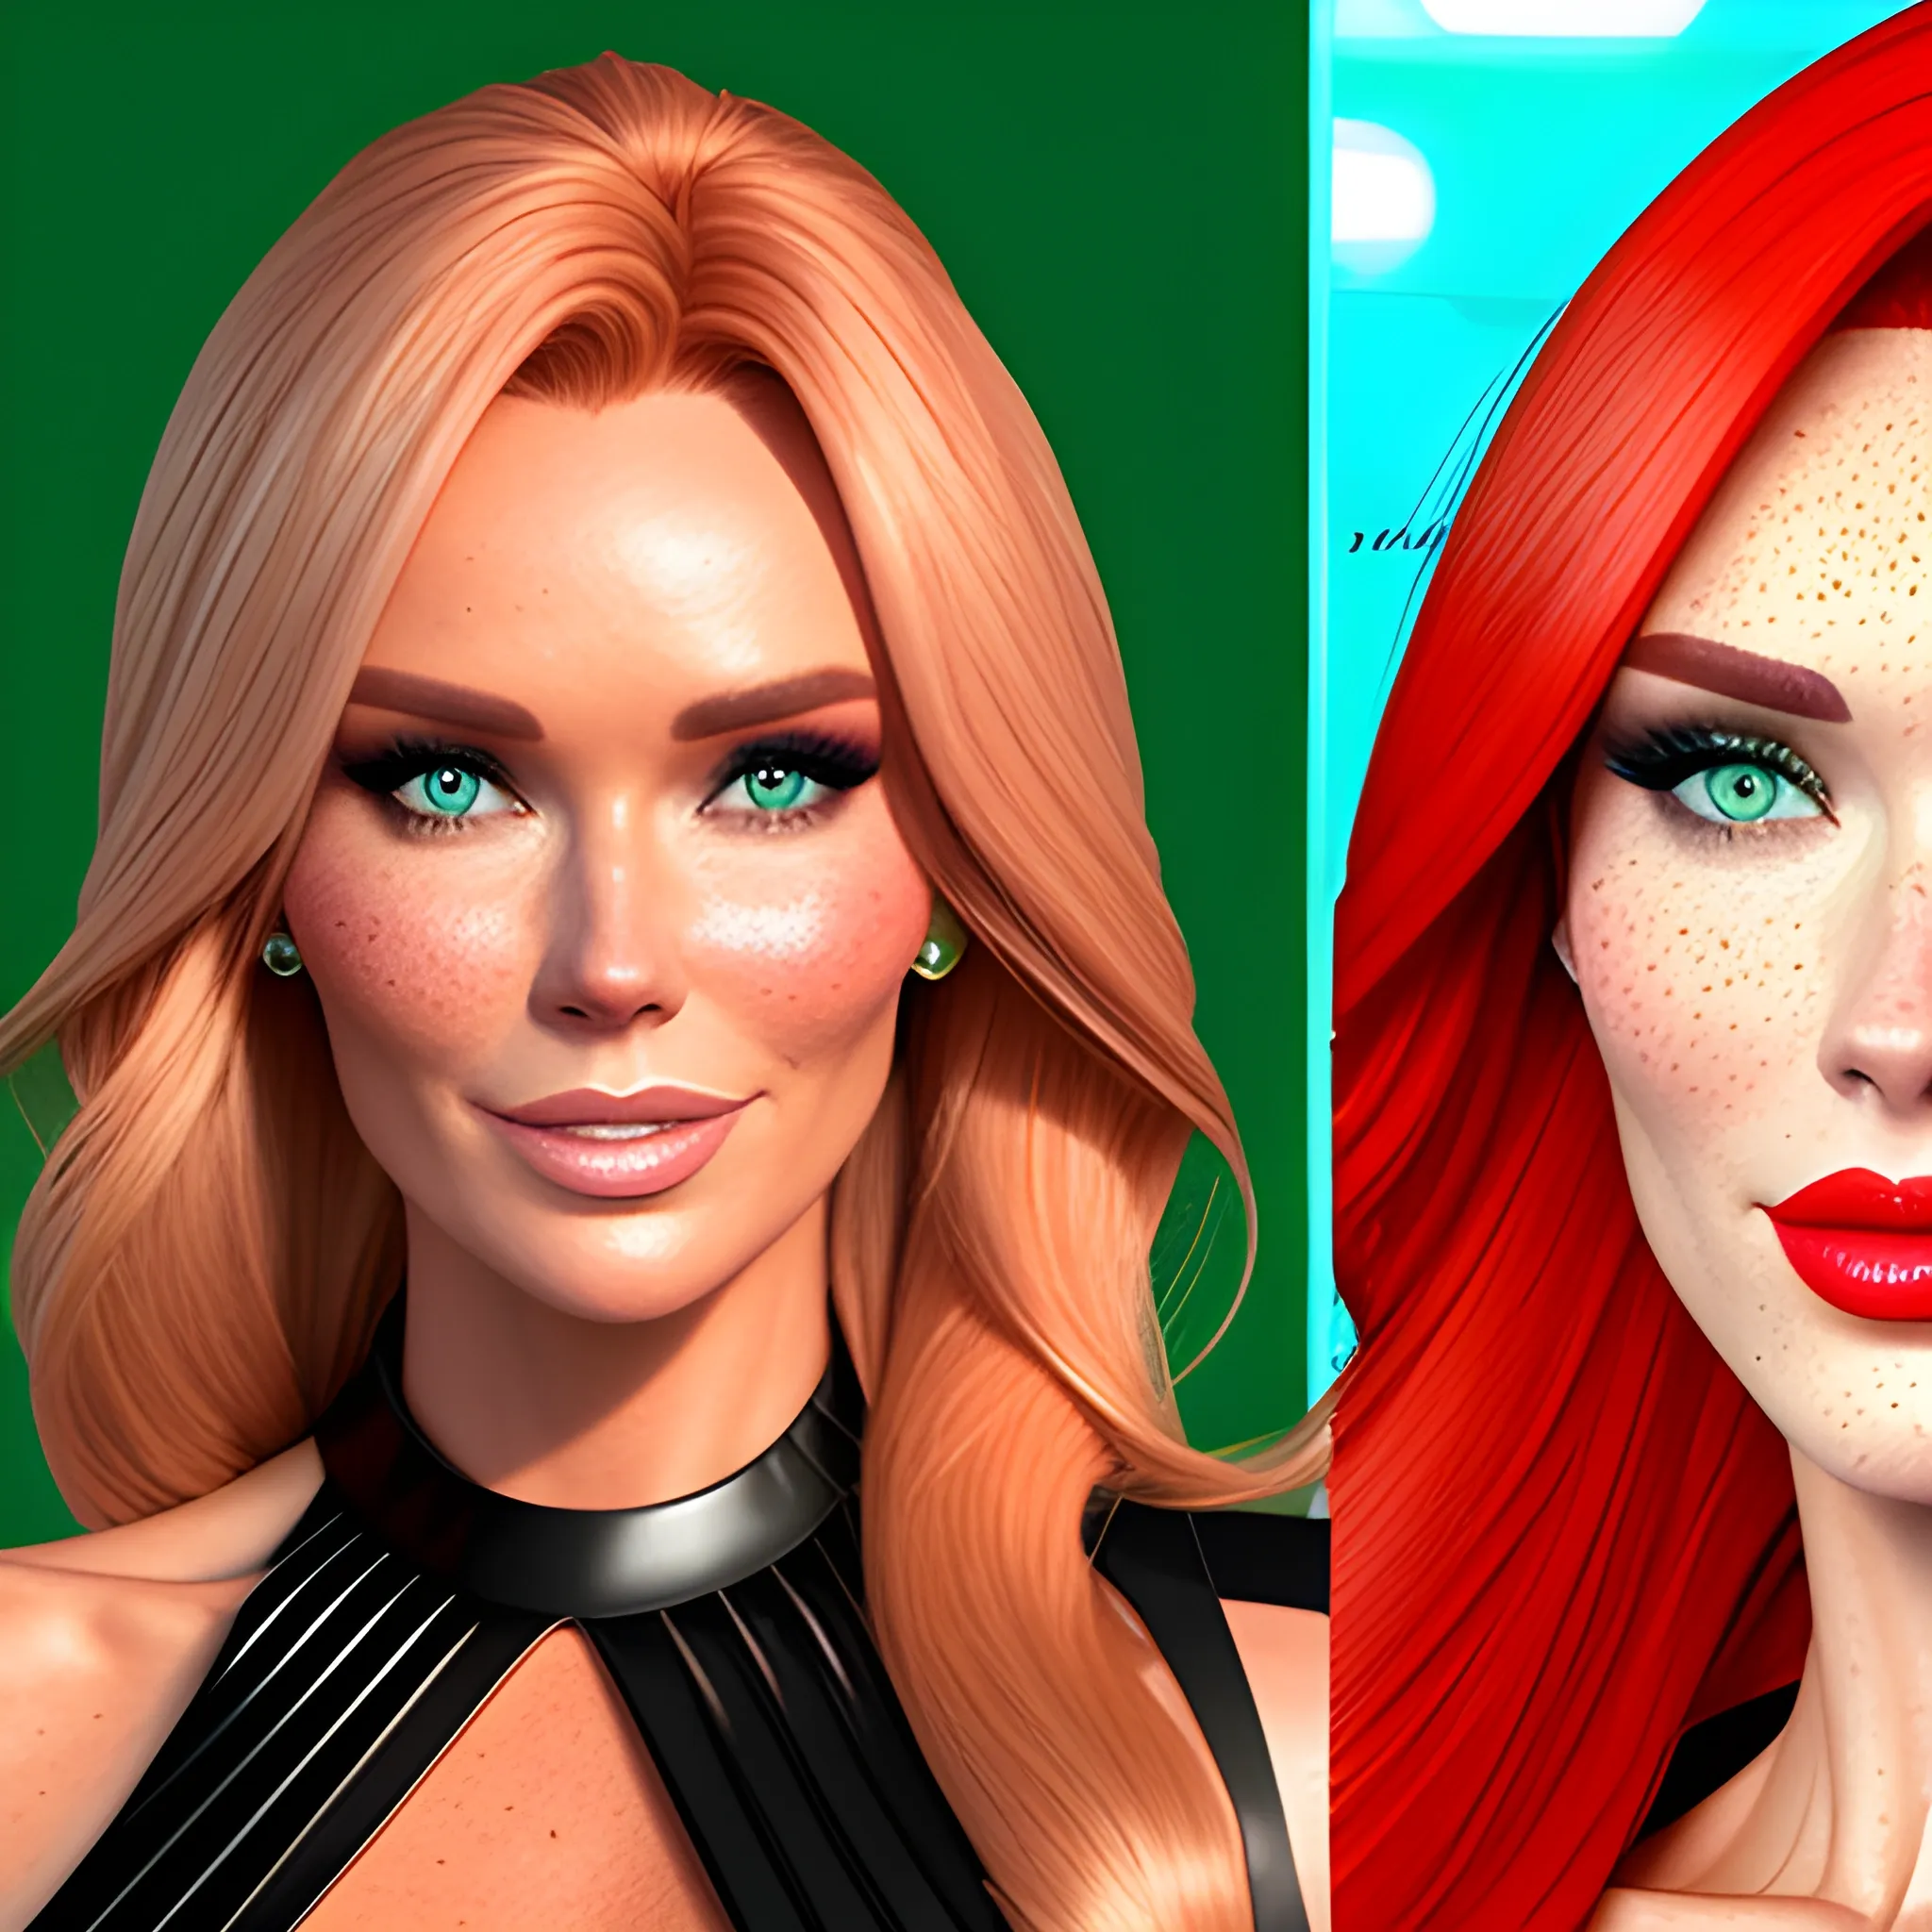 Amanda Holden / Shanina Shaik / Elsa Hosk face morph, 3D, red hair, green eyes, freckles, 90's mall background